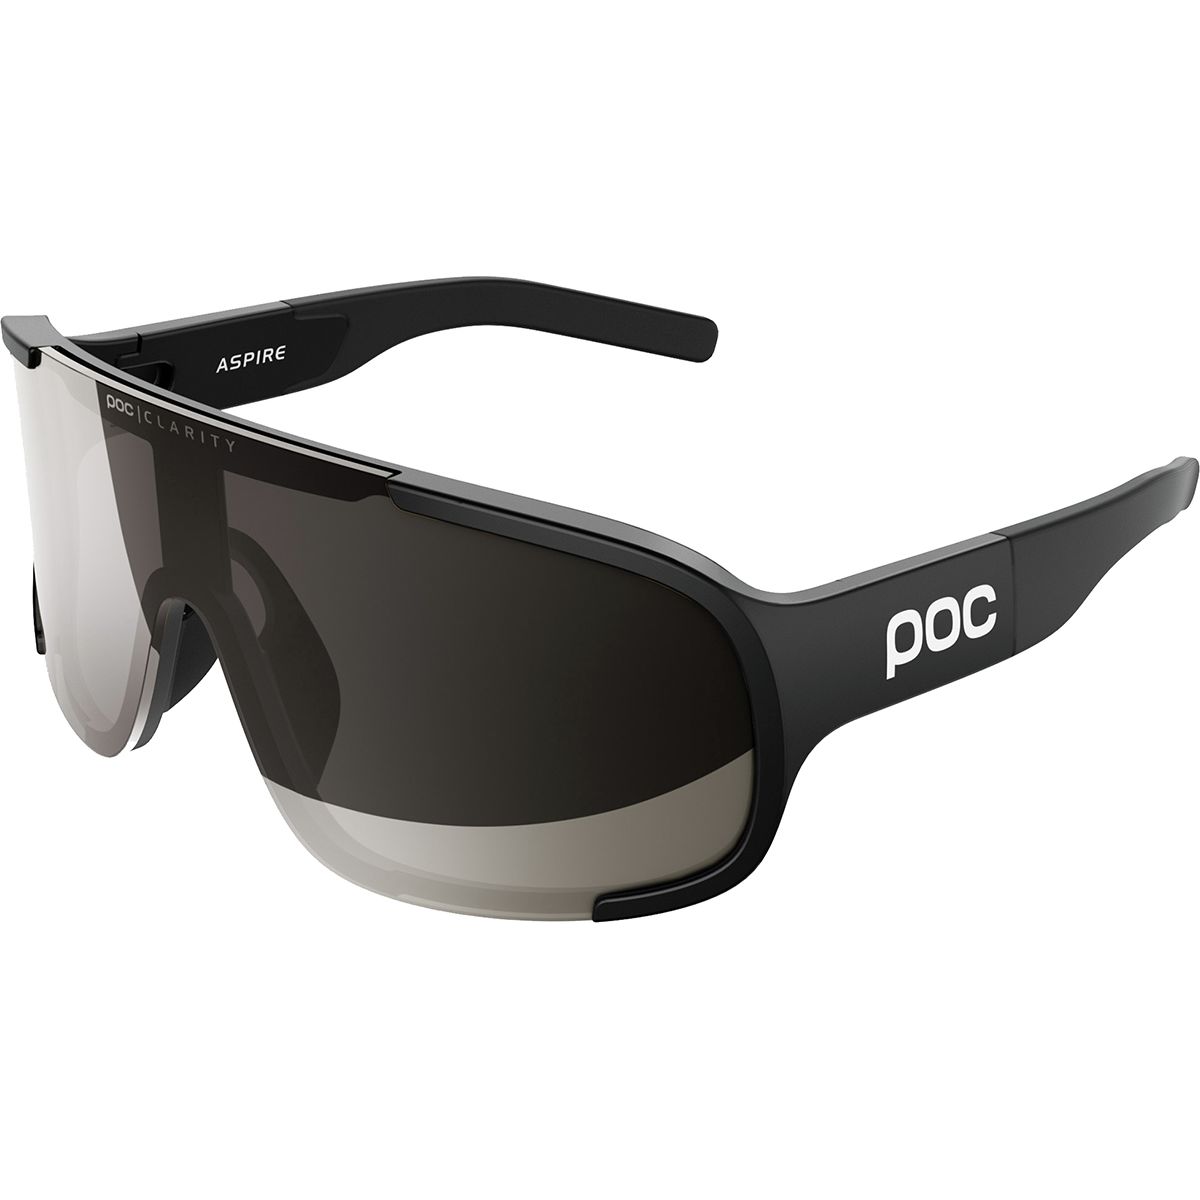 POC Aspire Sunglasses - Men's